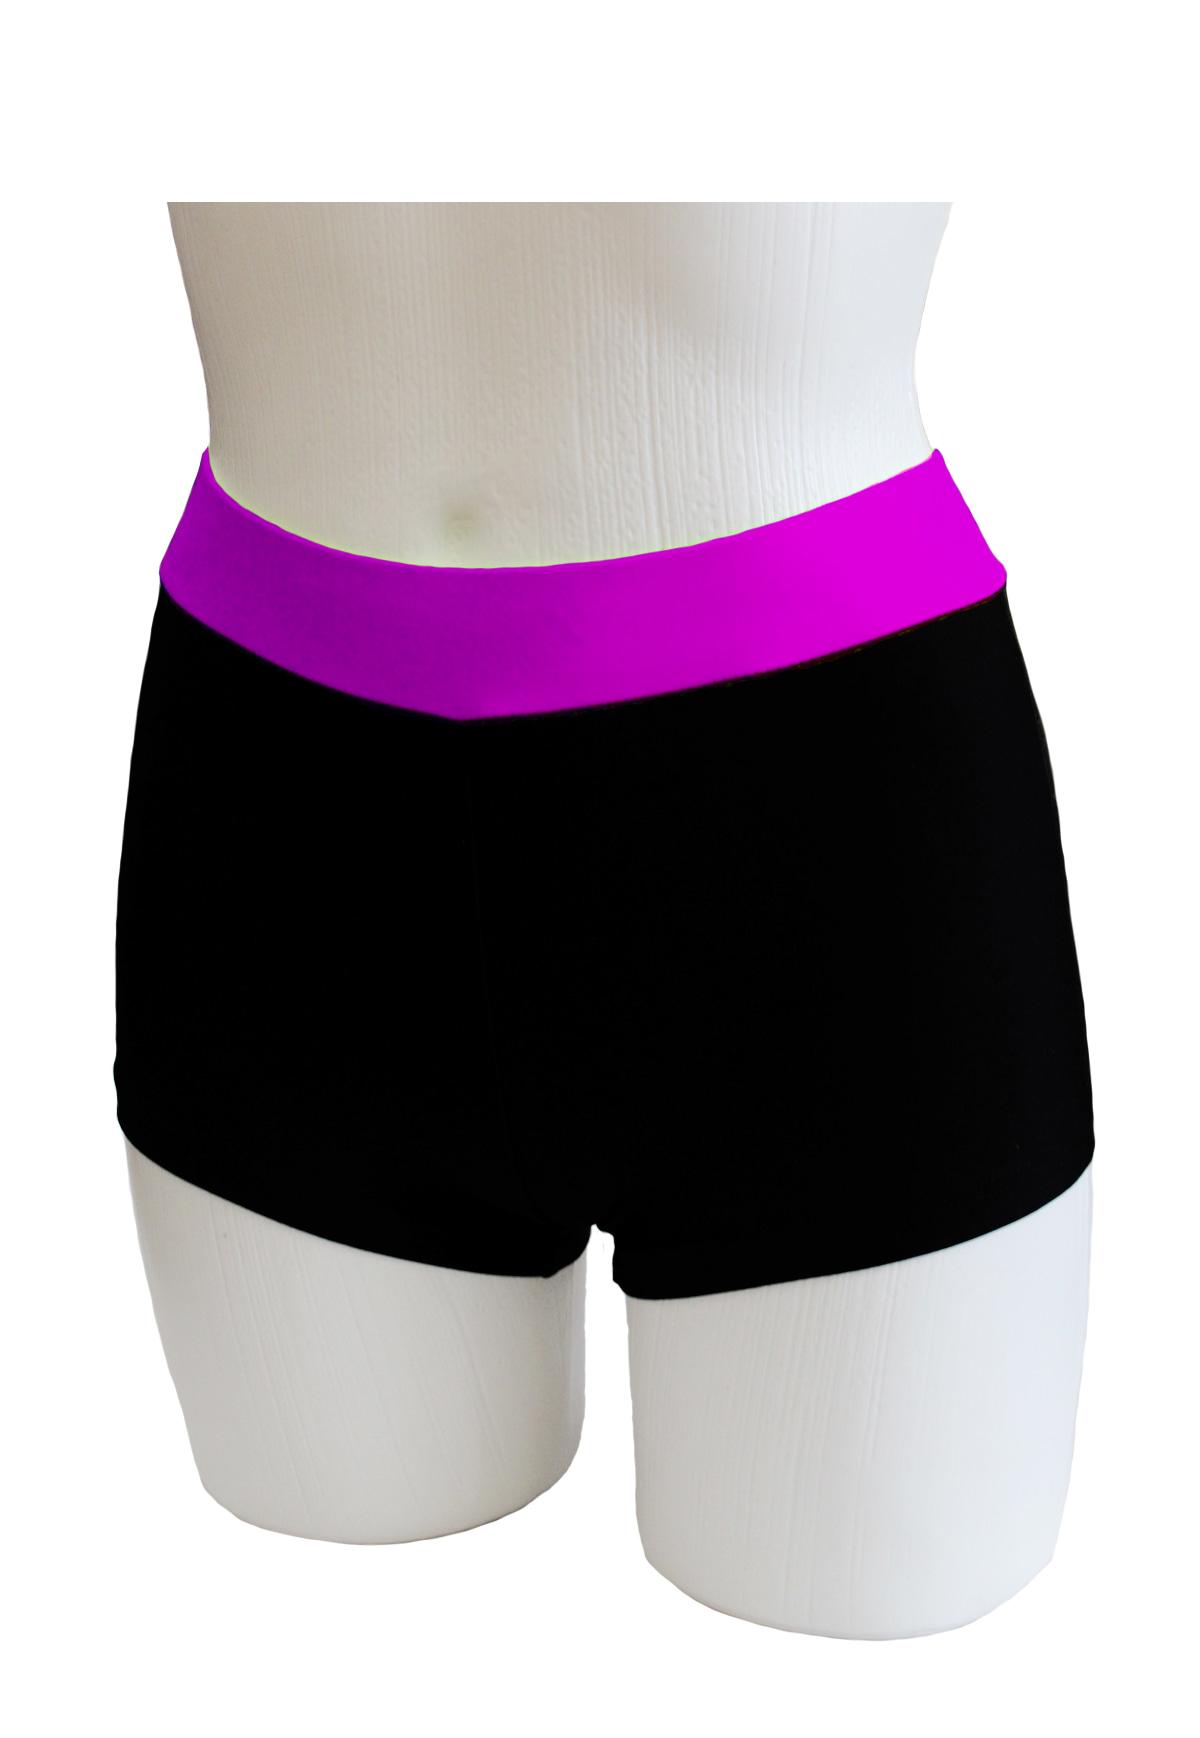 Шорты женские для спортивной гимнастики GK Sport ШКМ3.1Ср черные с сиреневым поясом